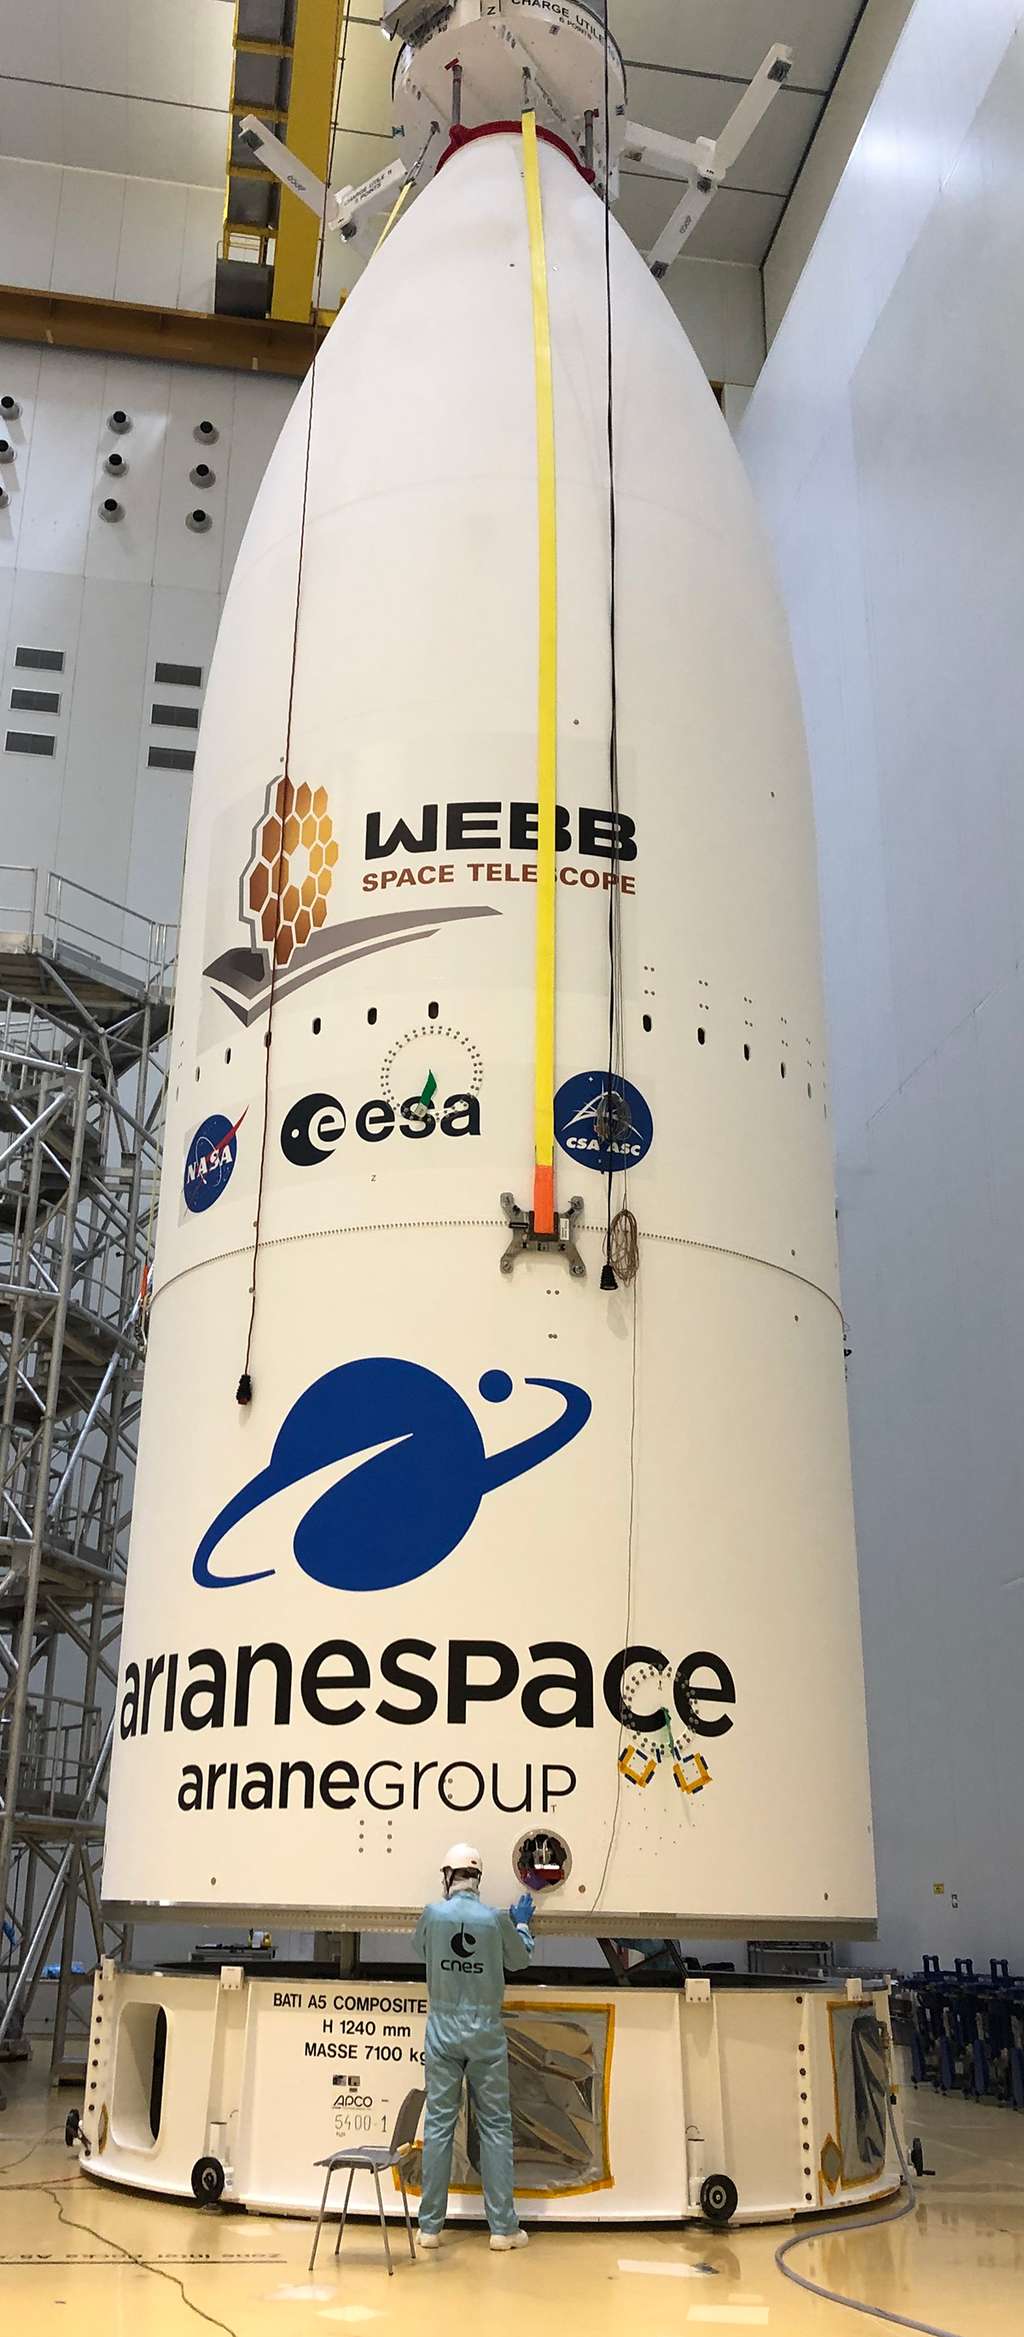 La coiffe du lanceur Ariane 5 qui sera aussi décontaminée pour garantir un niveau de propreté très élevé pour éviter tour risque de contamination du James Webb lors du décollage du lanceur. © Olivier Schmeitzky, ESA-Cnes-Arinaespace